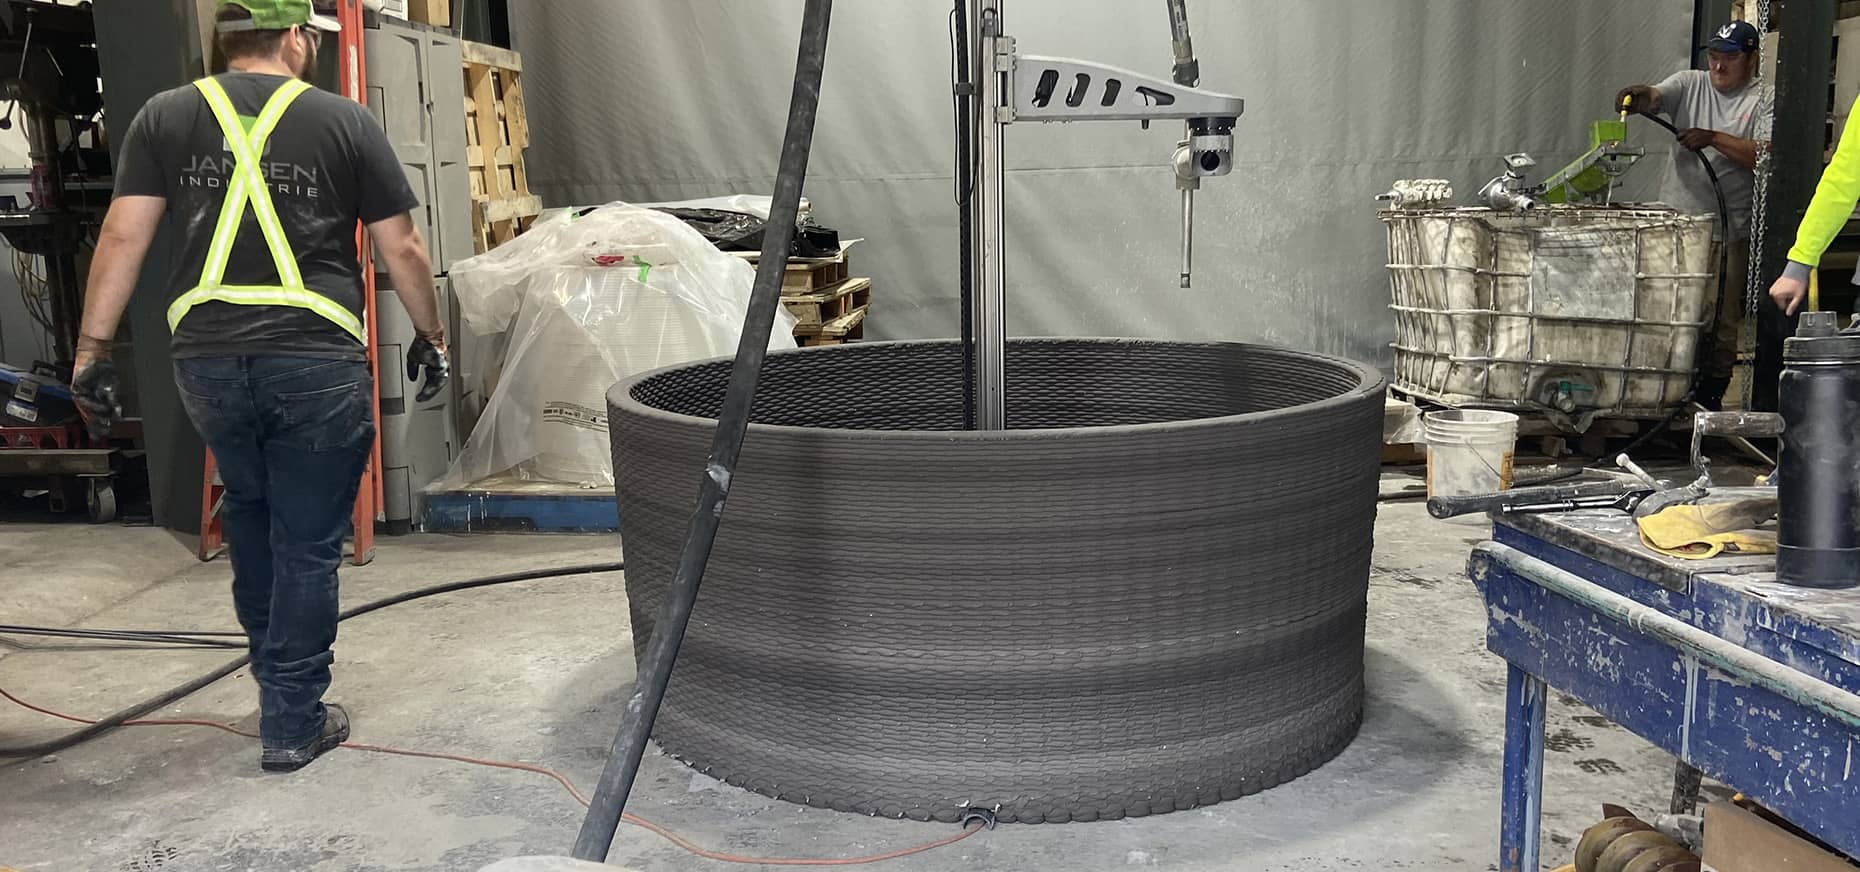 Mobilier circulaire en béton conçu à l'aide d'une imprimante béton 3D